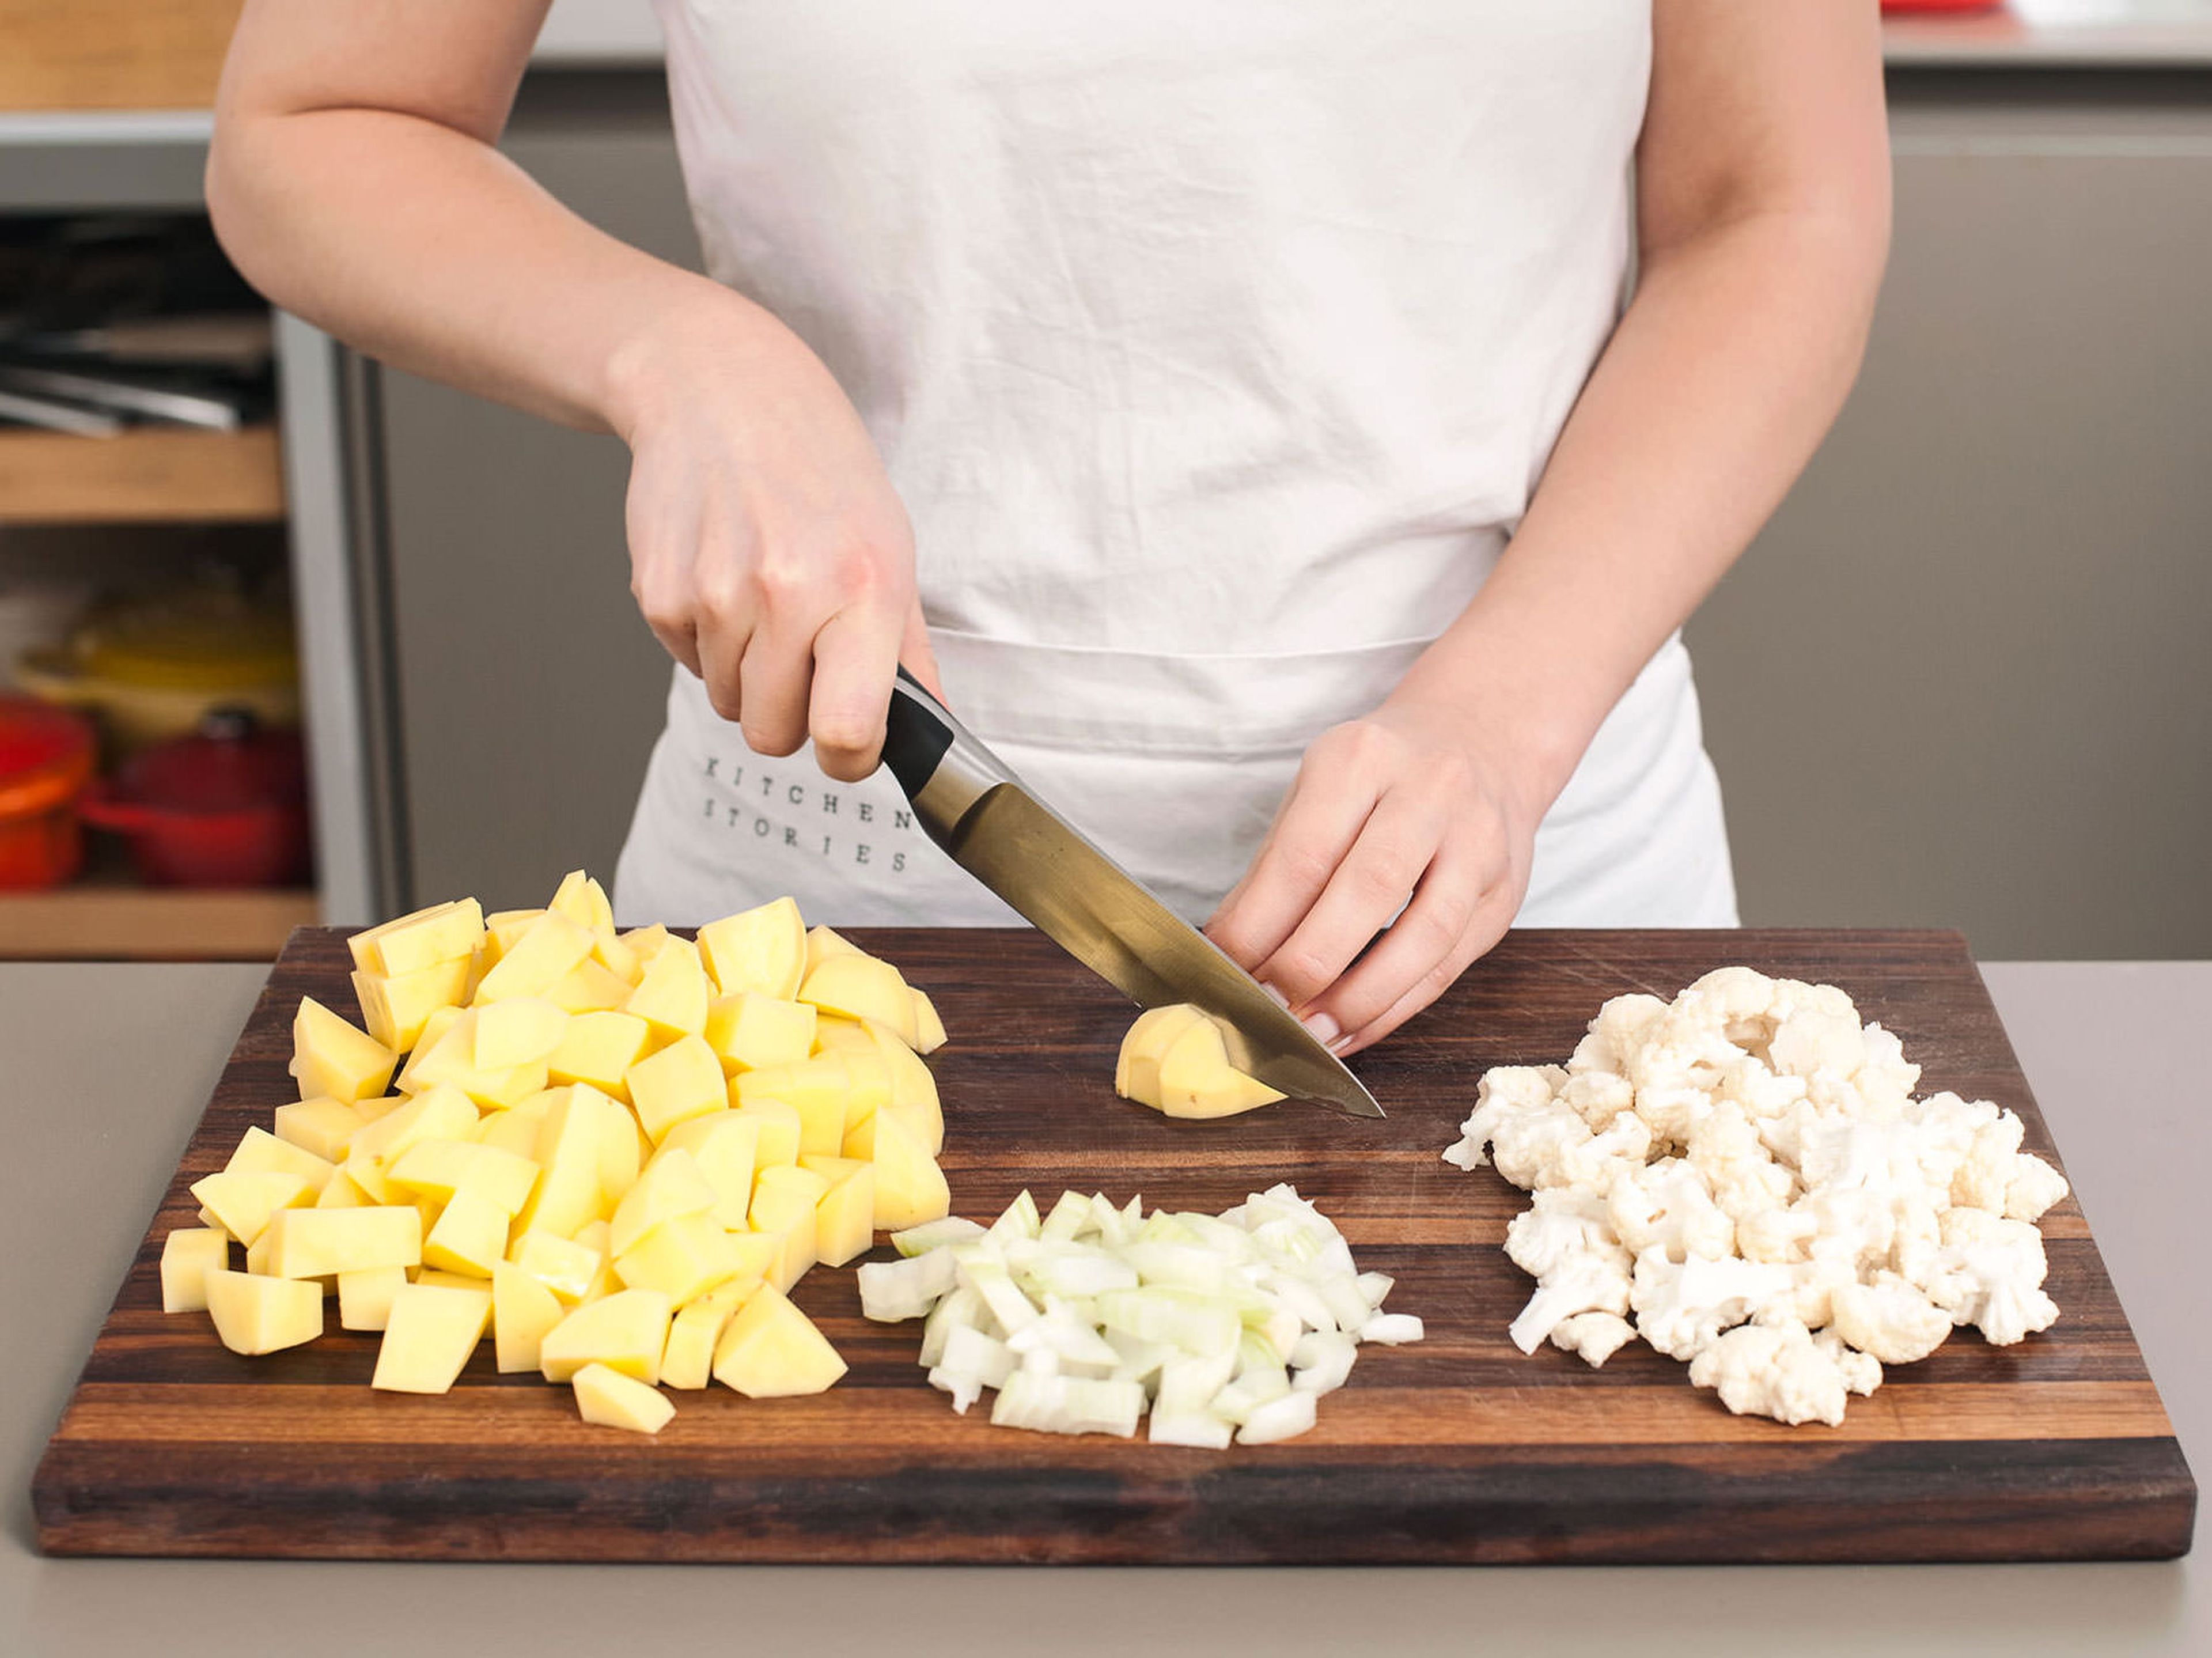 Kartoffeln schälen und in ca. 2 cm große Würfel schneiden. Zwiebel hacken und Blumenkohlröschen vom Strunk schneiden. Baconscheiben halbieren.